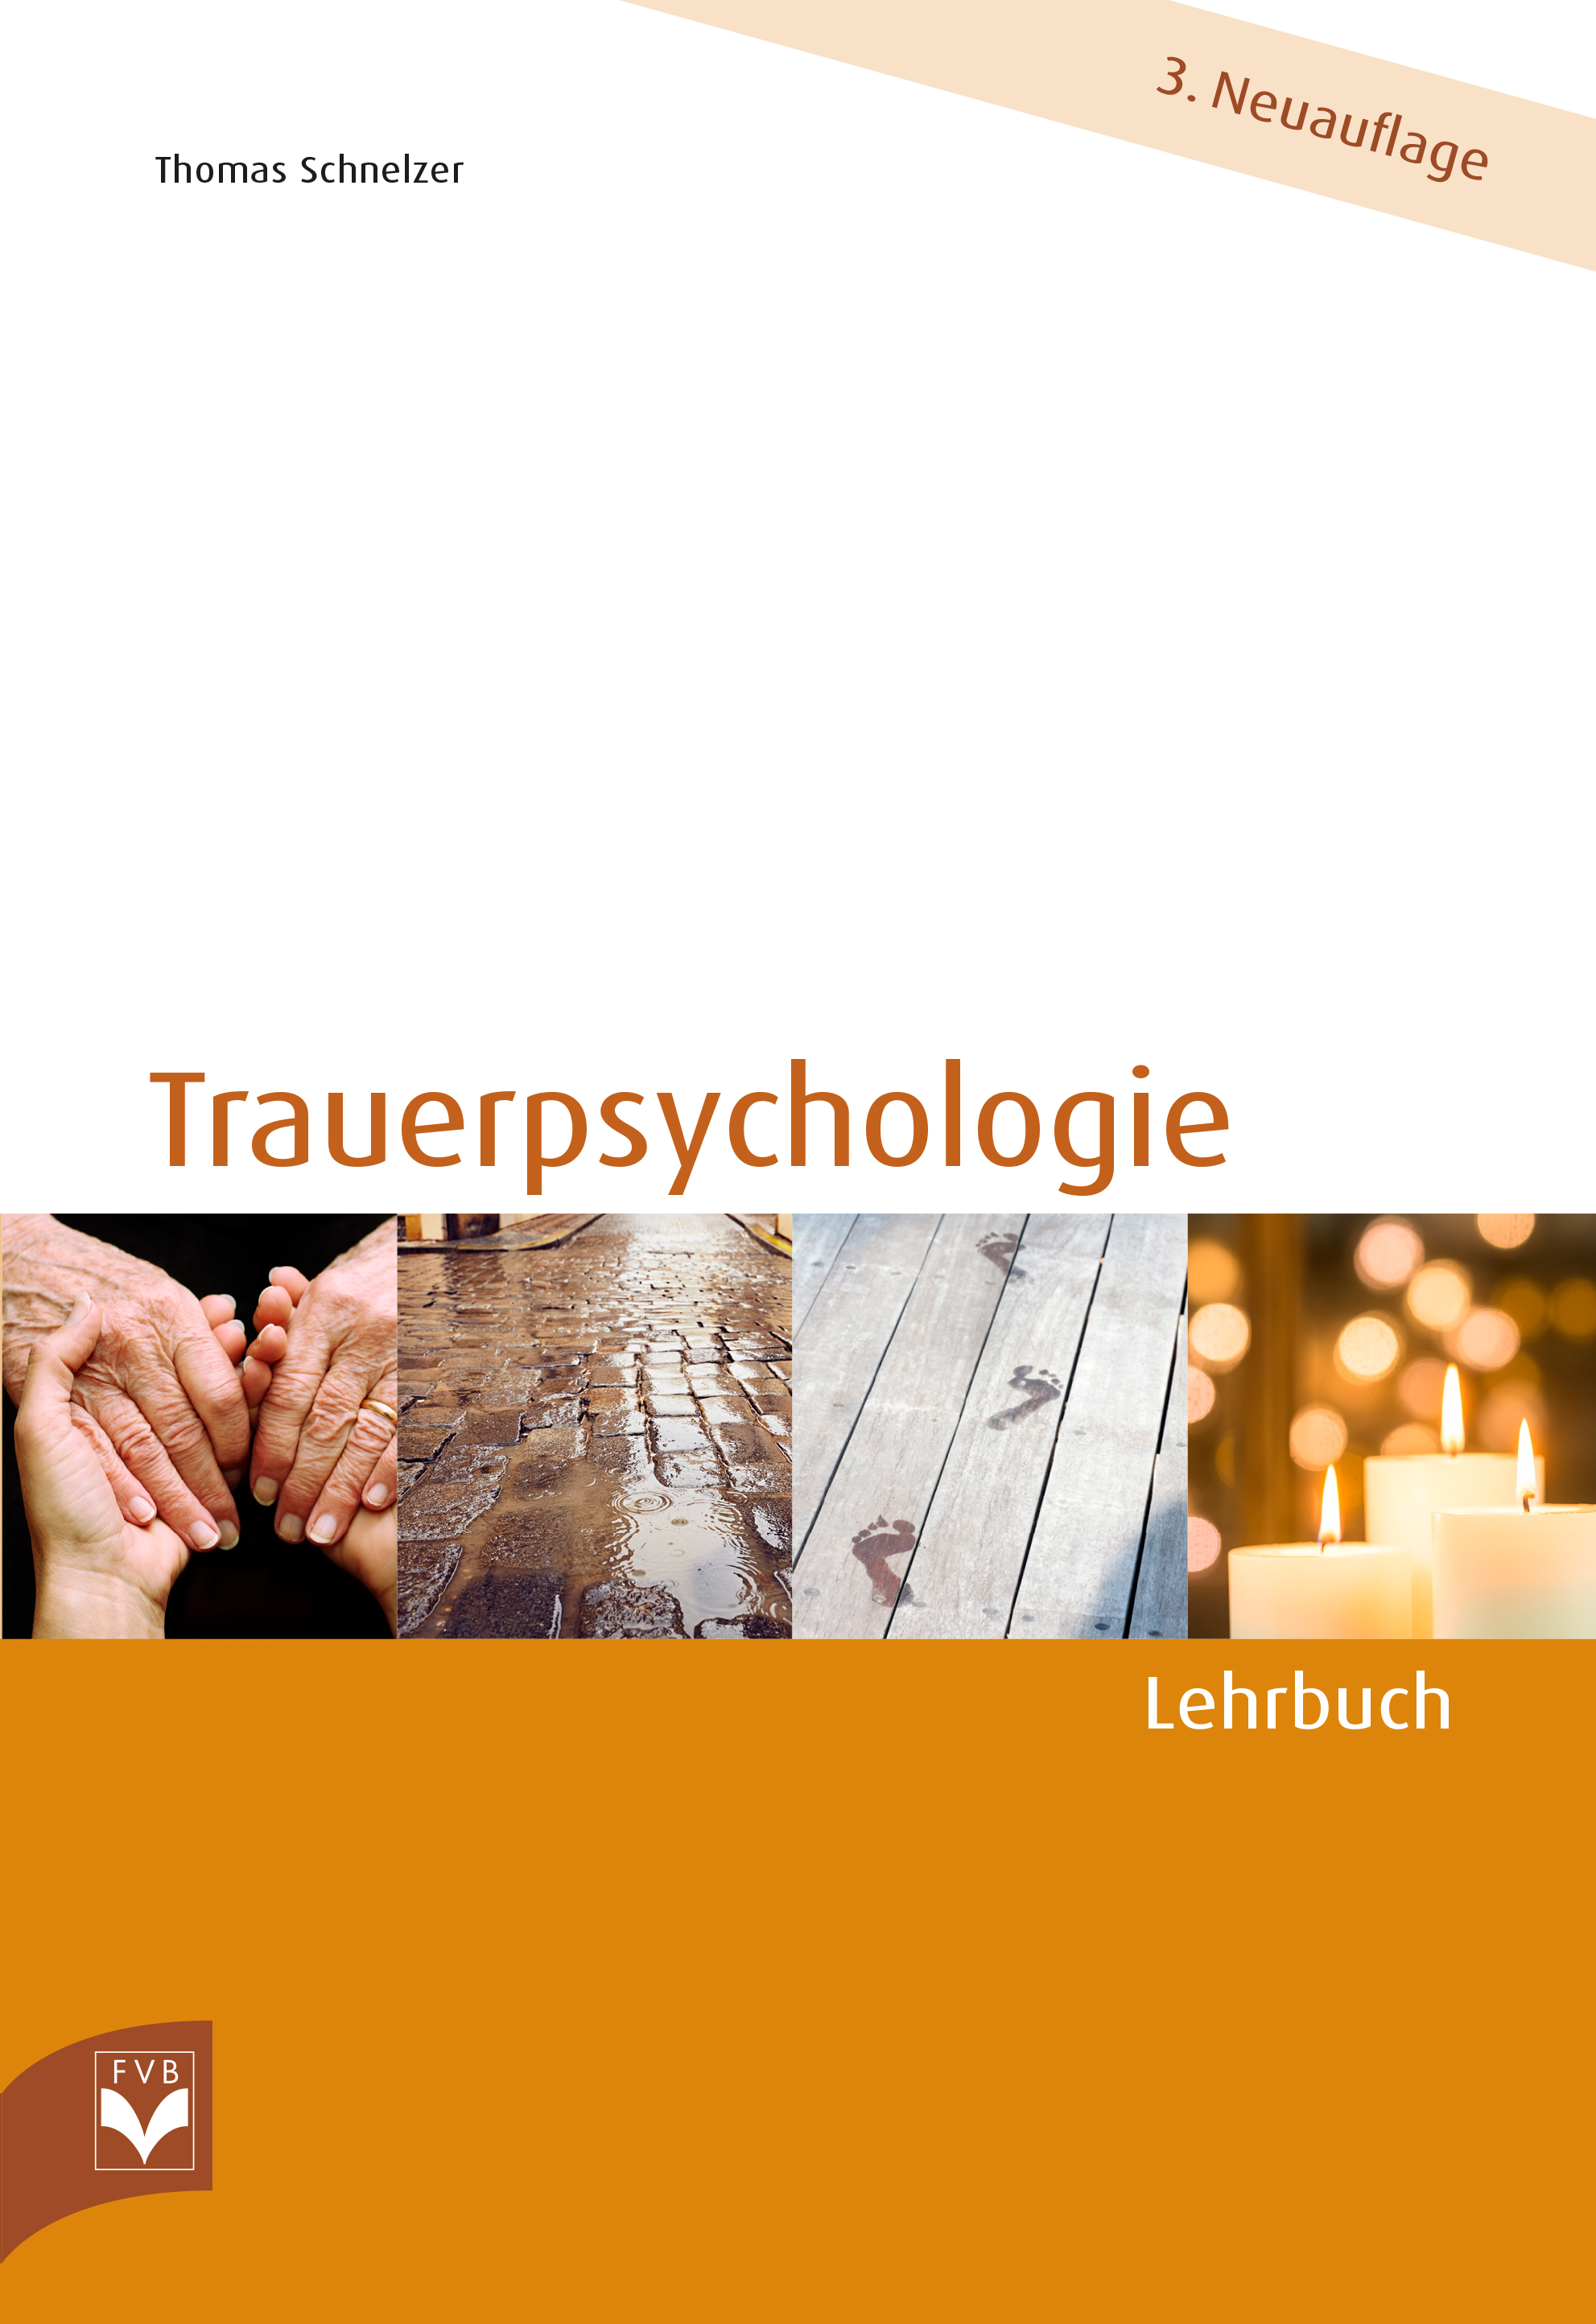 Trauerpsychologie – Lehrbuch 